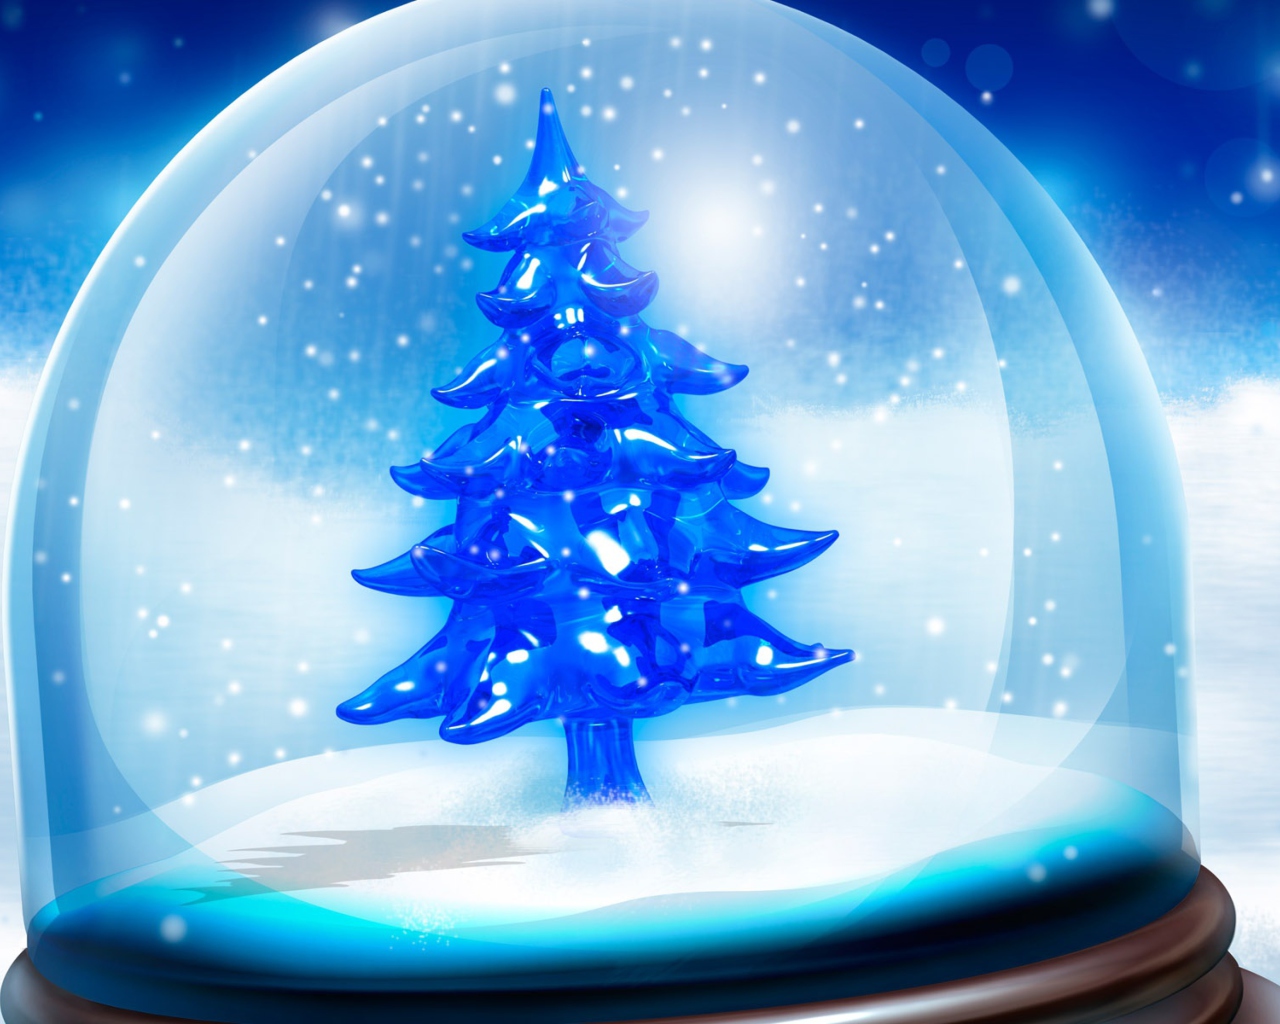 Das Snowy Christmas Tree Wallpaper 1280x1024